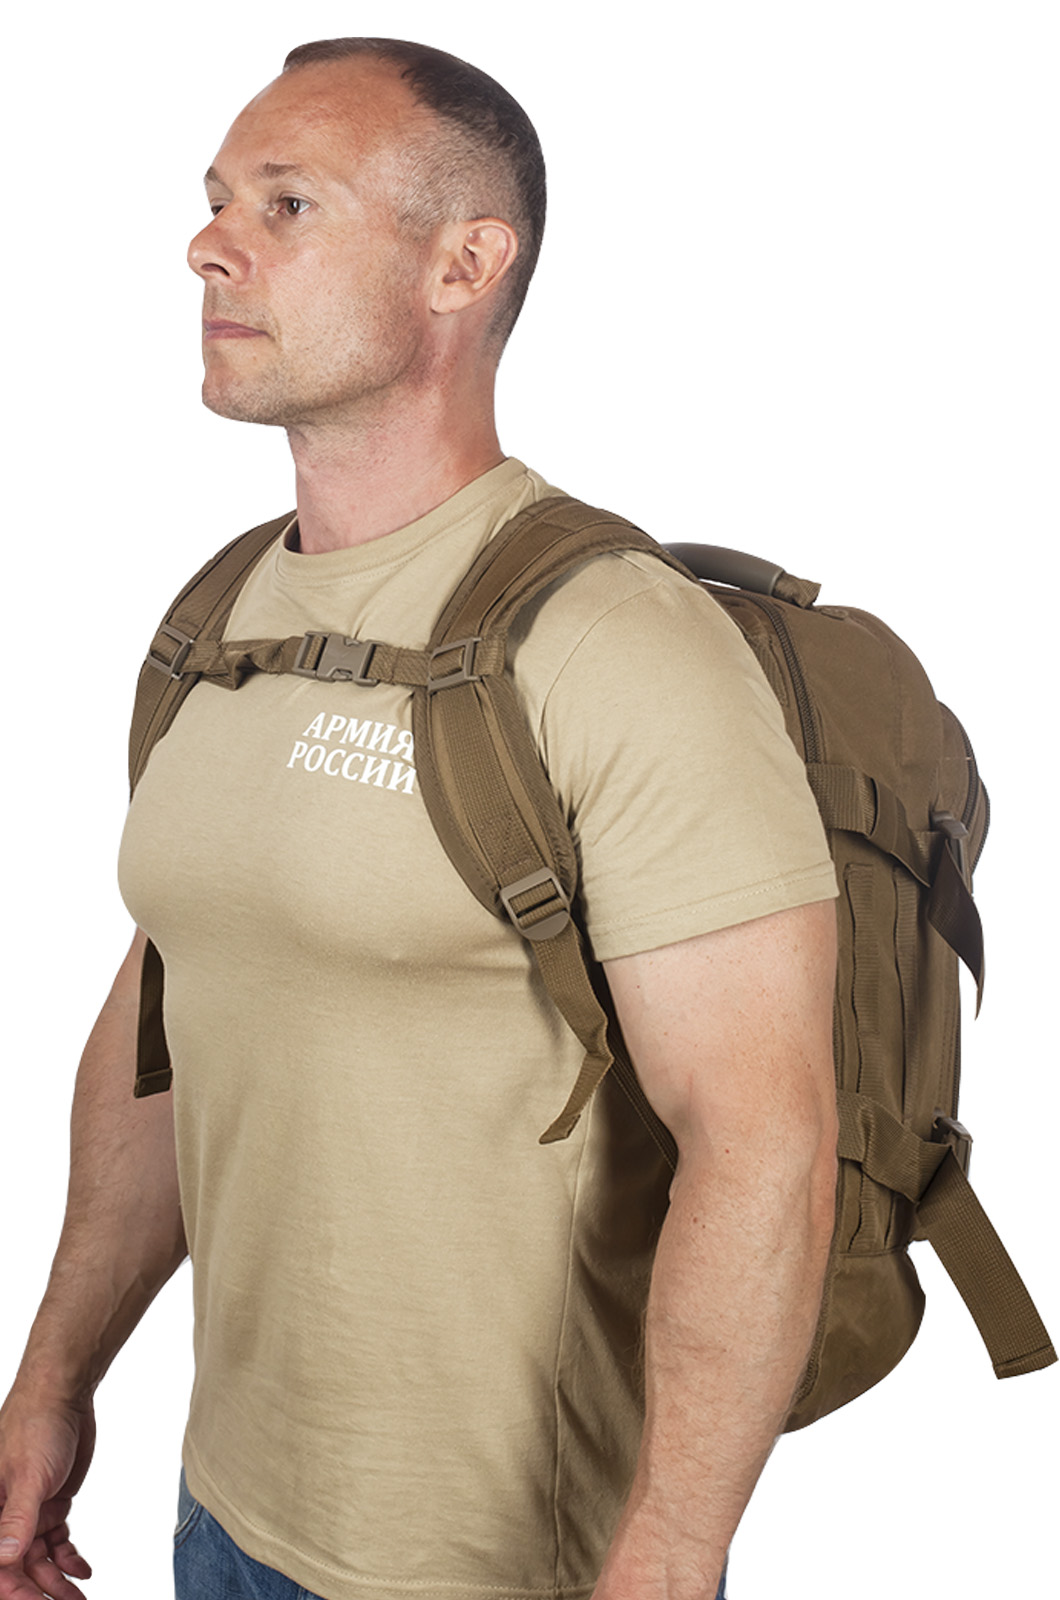 Патрульный трехдневный рюкзак 3-Day Expandable Backpack 08002B Coyote с эмблемой СССР 